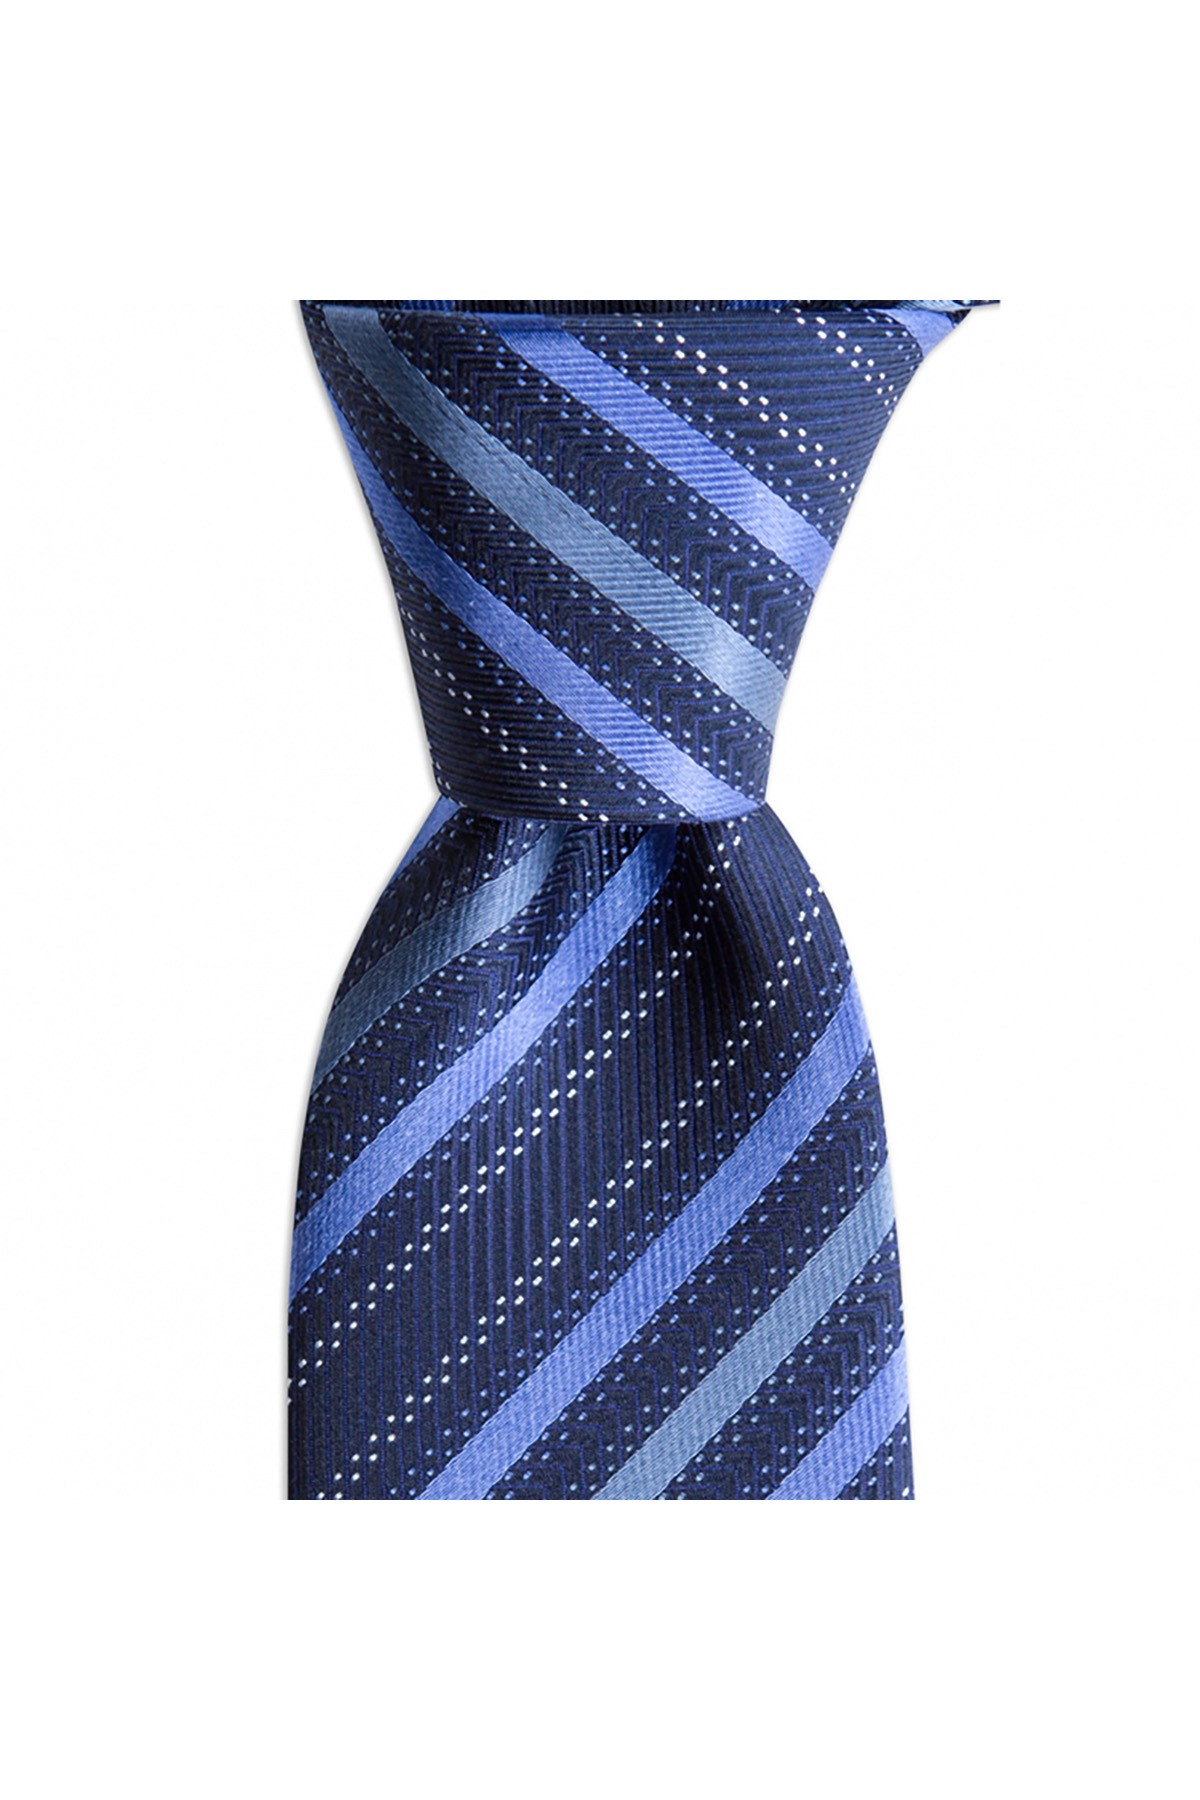 Çok çizgili 7,5 cm genişliğinde klasik ipek kravat - Lacivert